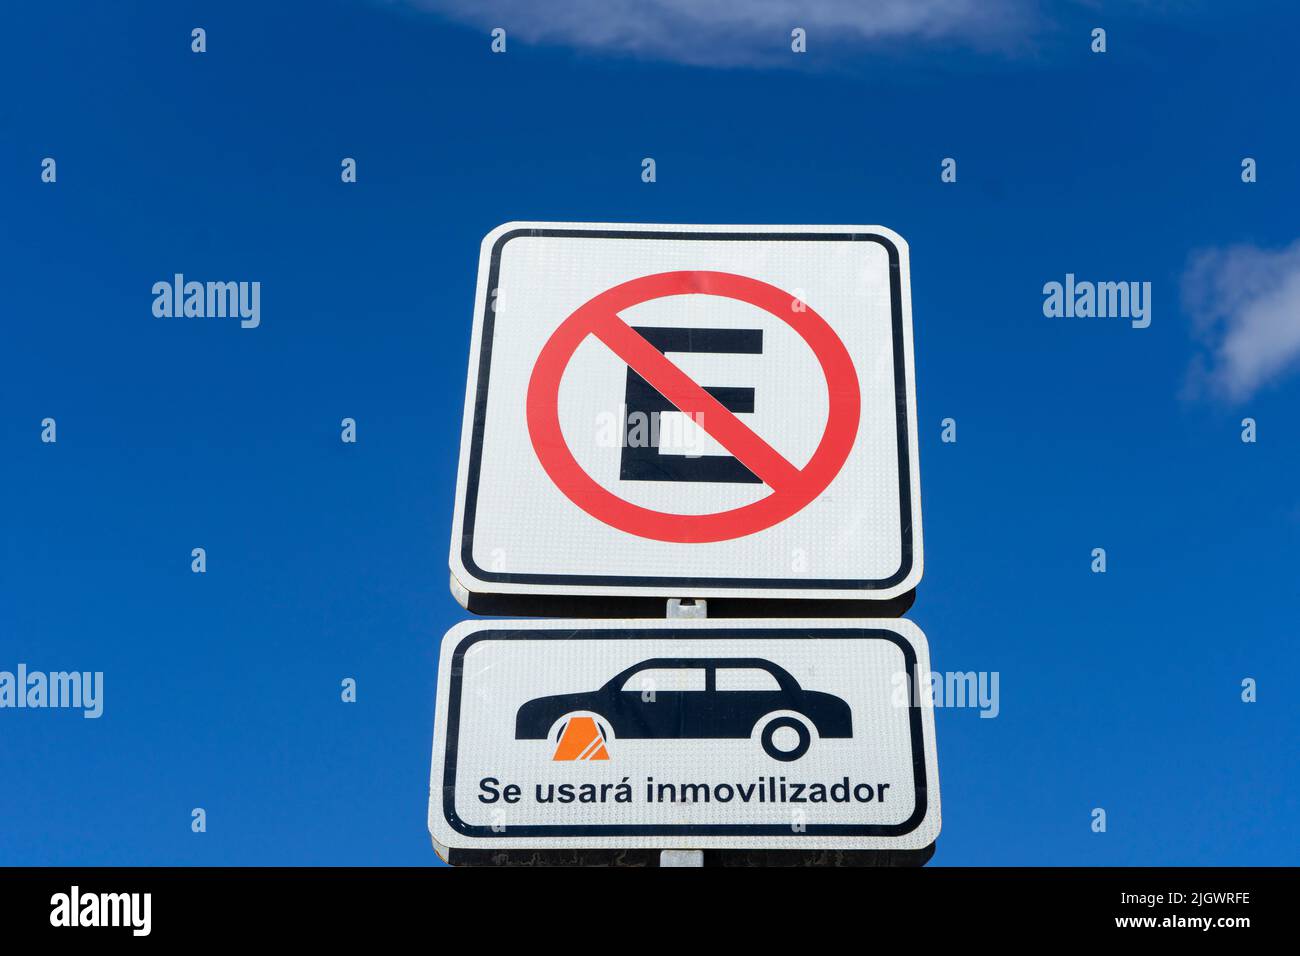 Señal de prohibición de aparcamiento con bloqueo de ruedas en español, contra el cielo azul Foto de stock